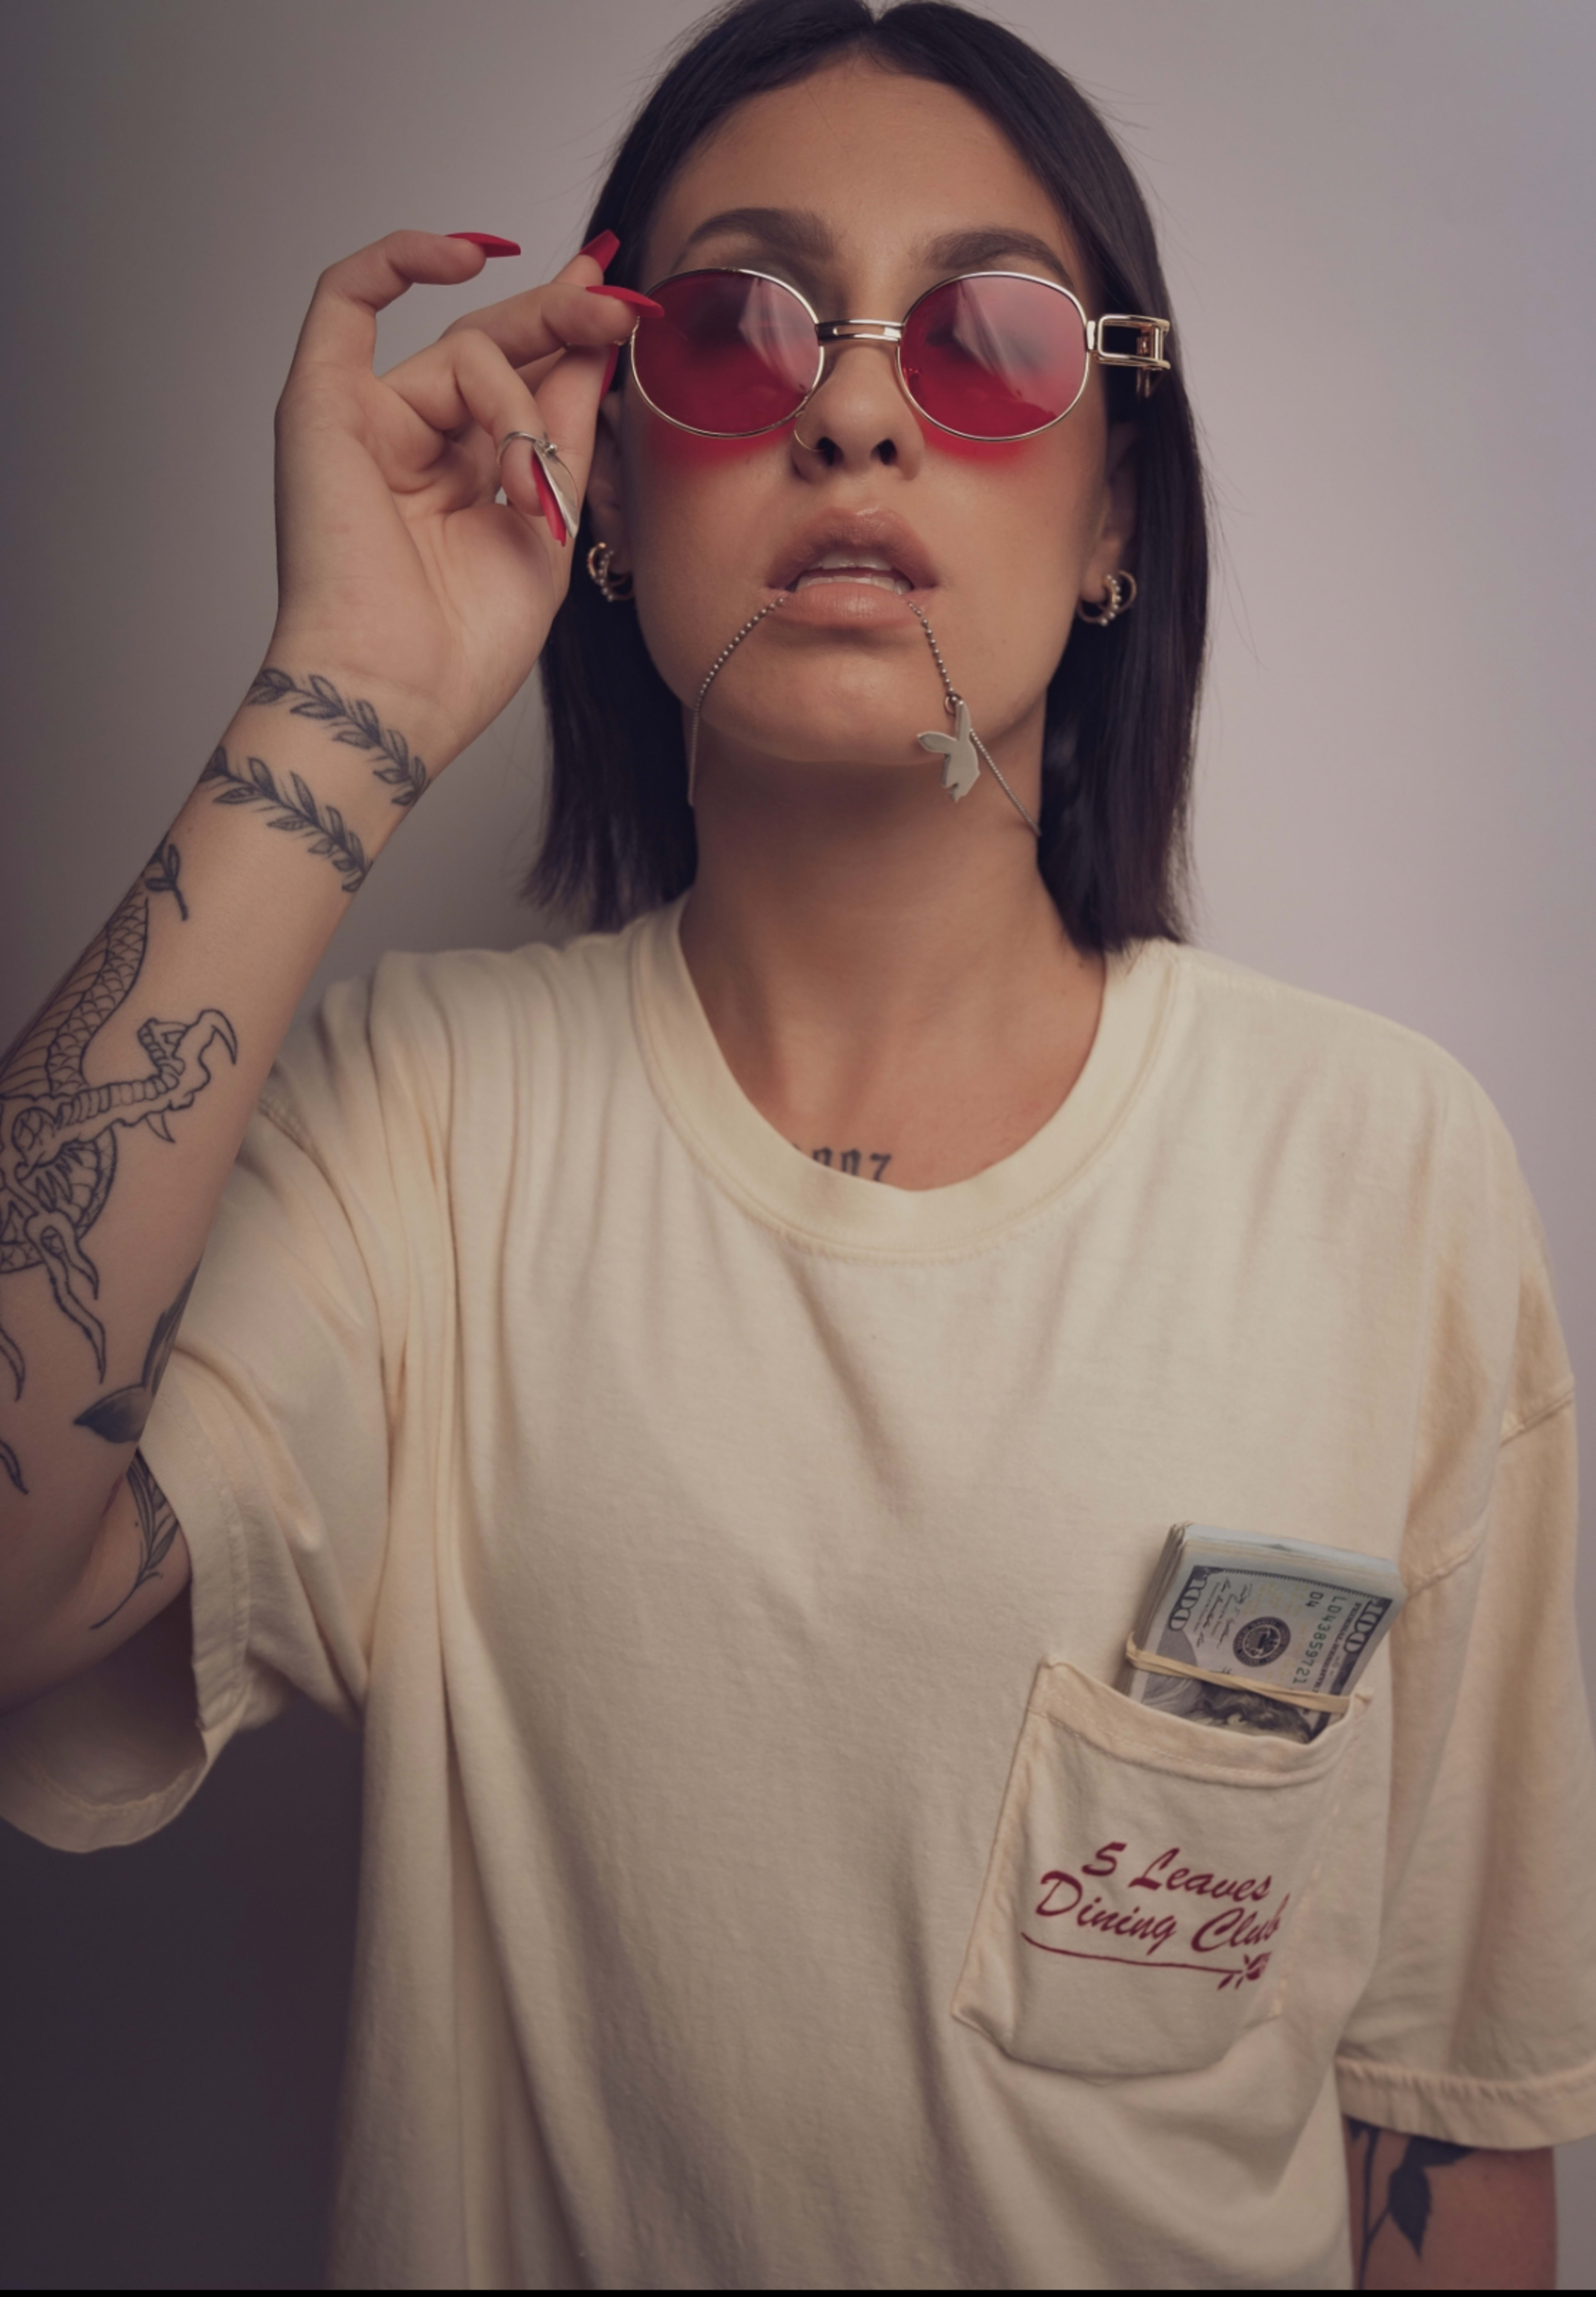 Una modelo con tatuajes, camisa blanca y gafas rojas con dinero posando para una sesión de fotos.